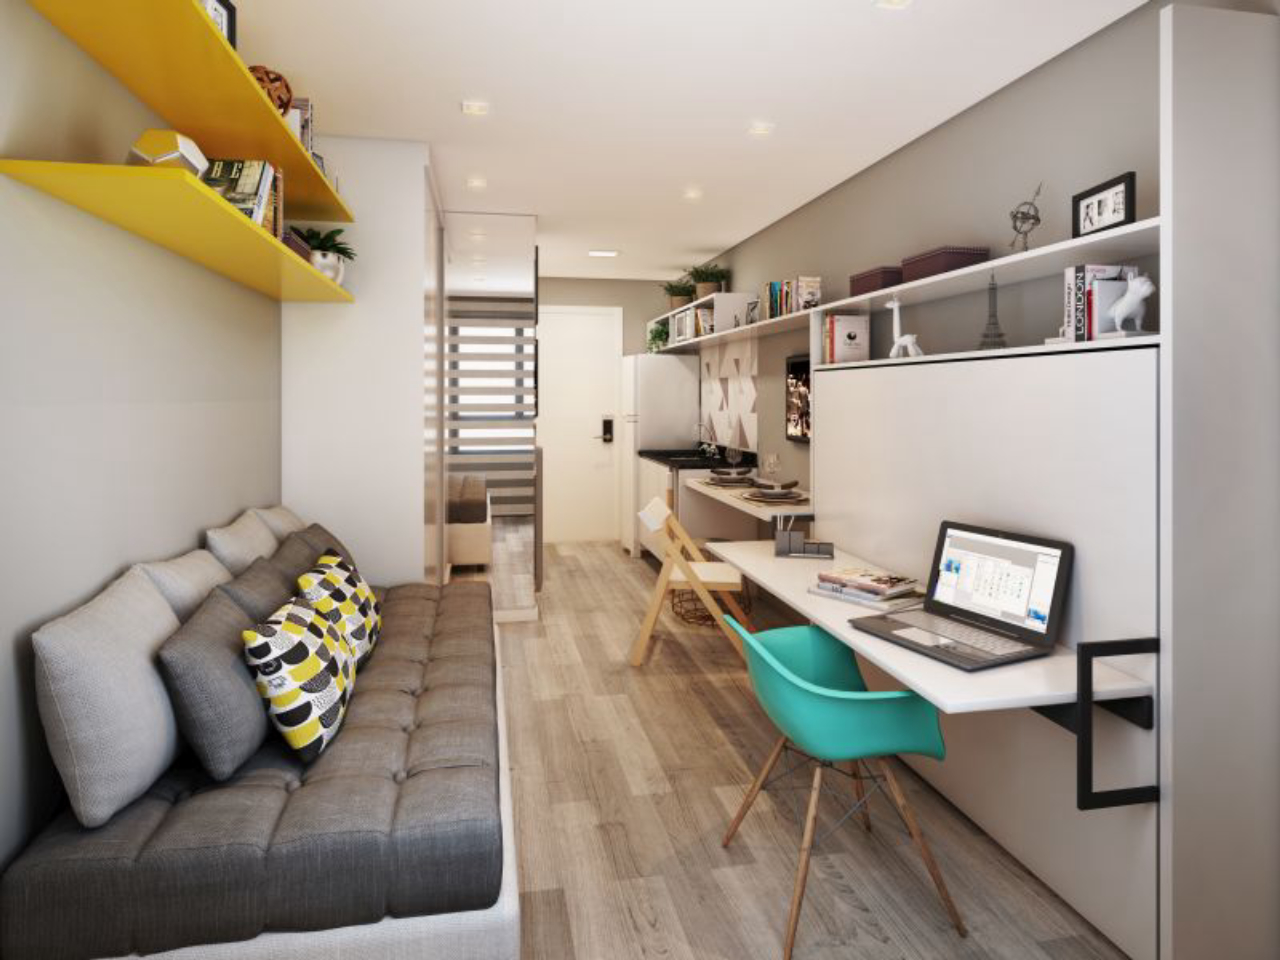 Projeto do apartamento de 17 metros quadrados. Haverá três modalidades de apartamentos: sem mobília, mobiliado e completo (mobiliado e decorado). 